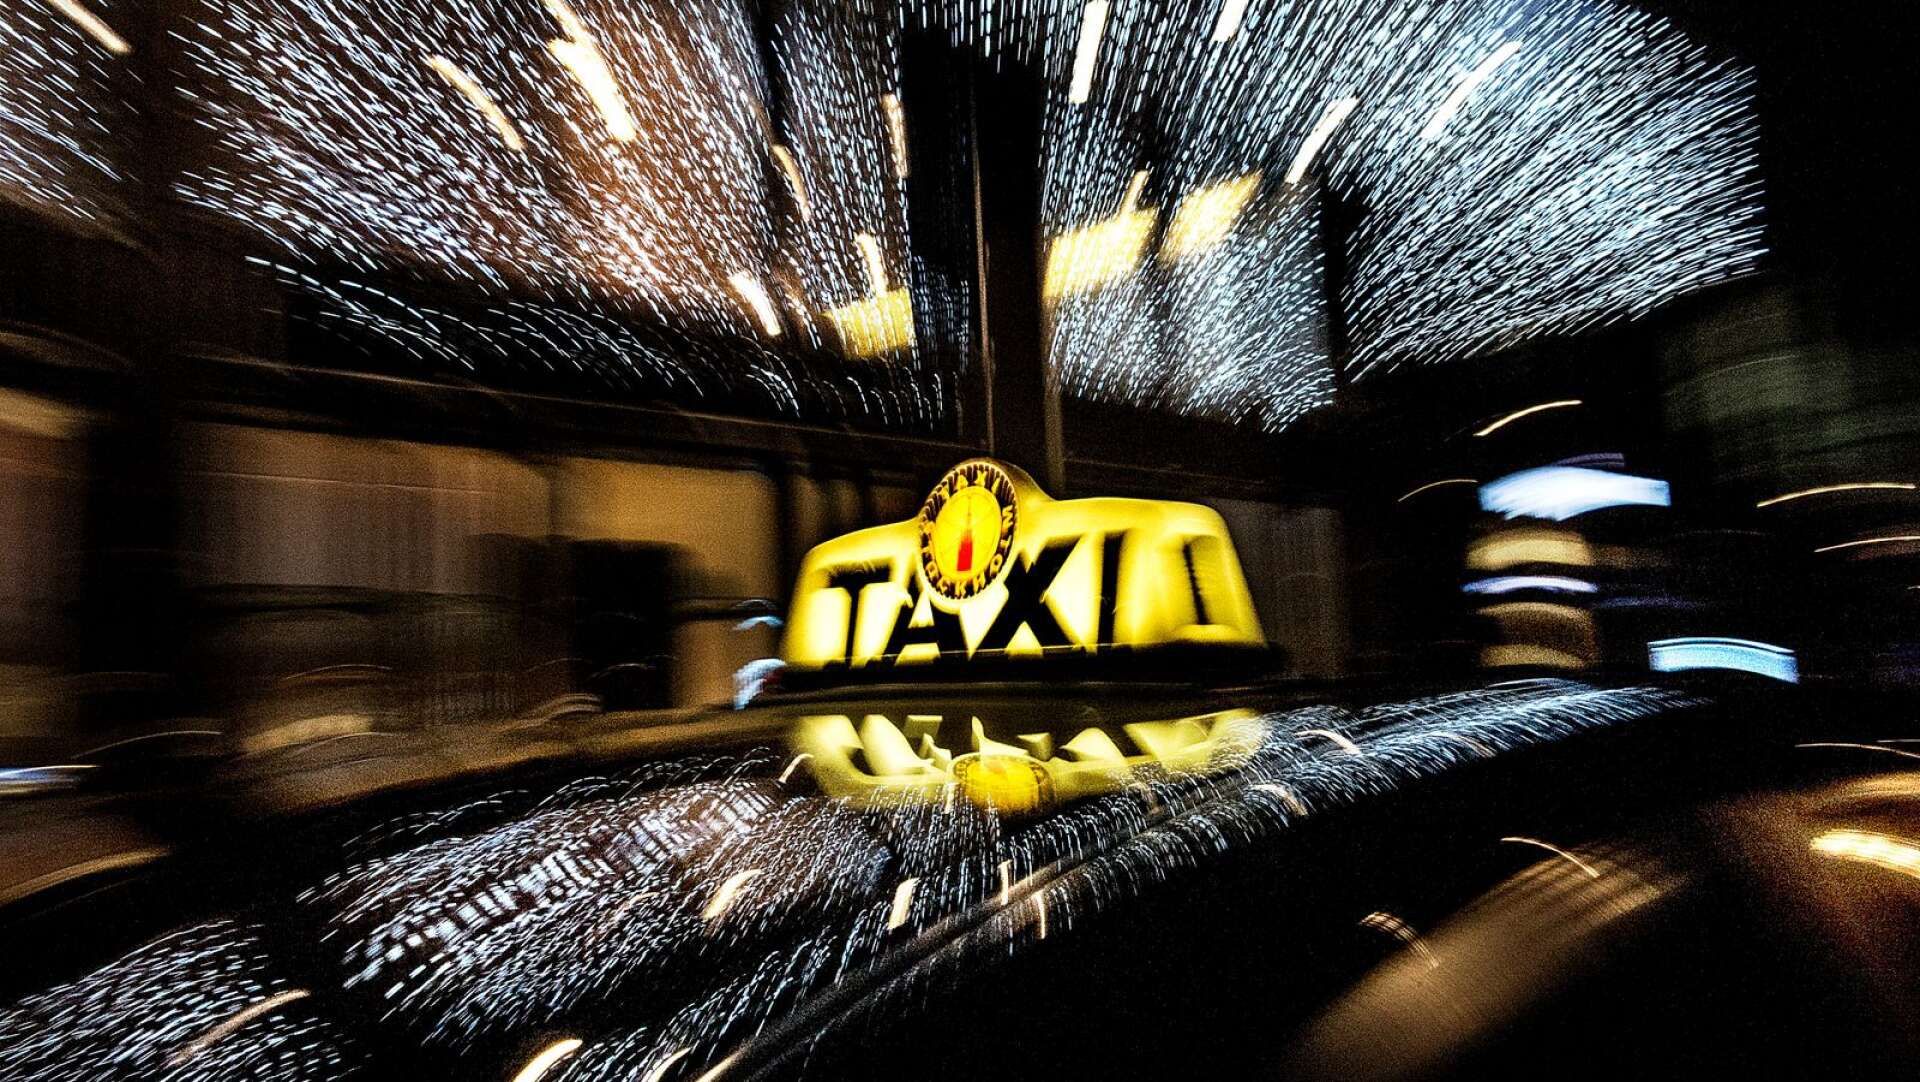 Fullständig regelefterlevnad är ett krav för  taxiförarlegitimation. Dock har branschen ett stort problem och det är konkurrensen från svarttaxi, skriver Lennart Kalderén, ordförande Svenska Taxiförbundet.